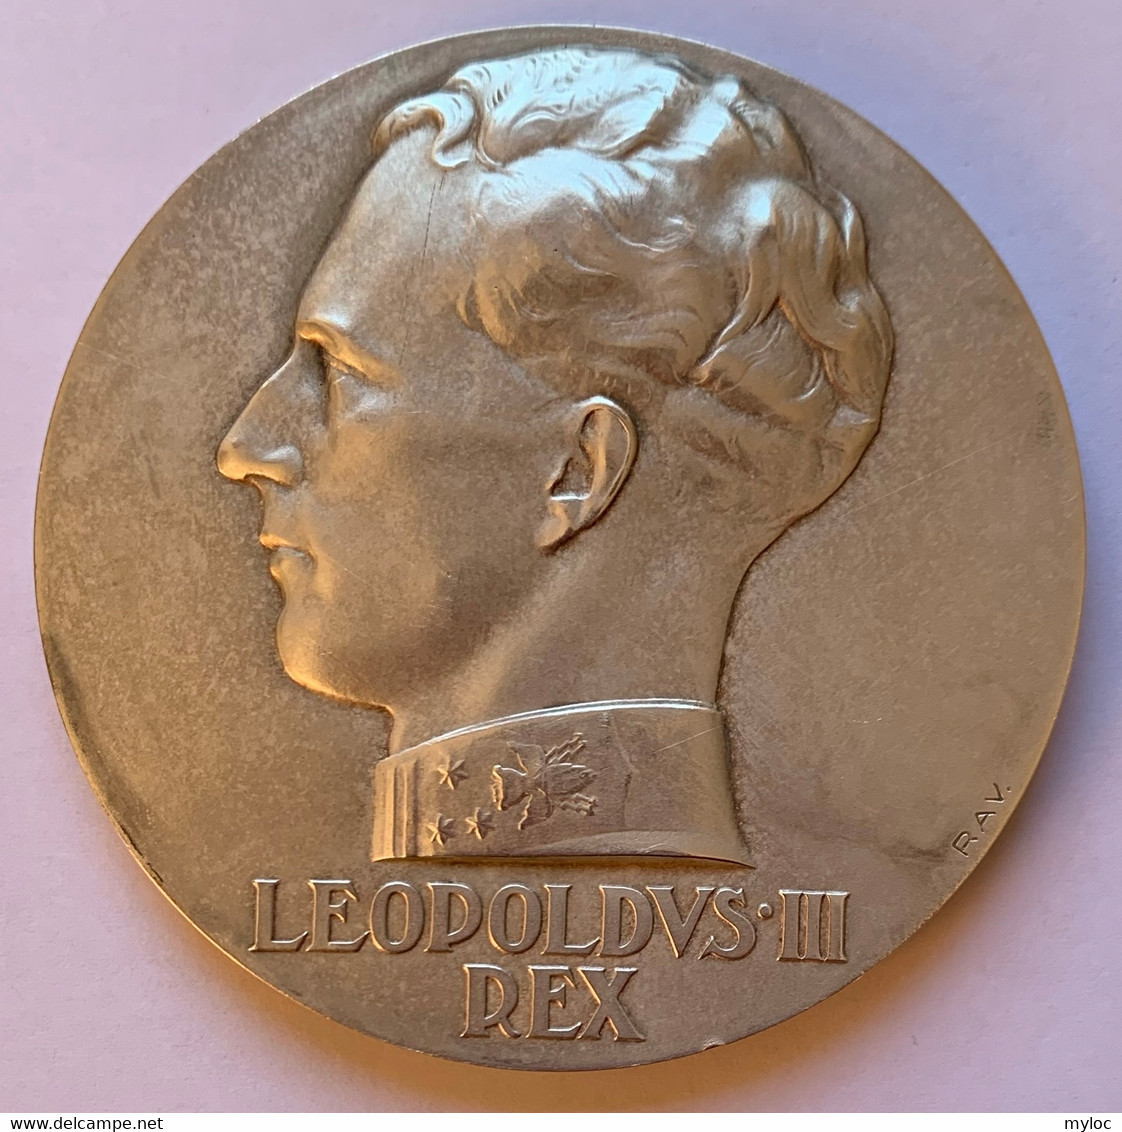 Médaille Bronze Argenté. Ecole De Musique Saint-Gilles-Lez-Bruxelles. Déclamation Henny Weissbort 1938. Léopold III Rex - Profesionales / De Sociedad